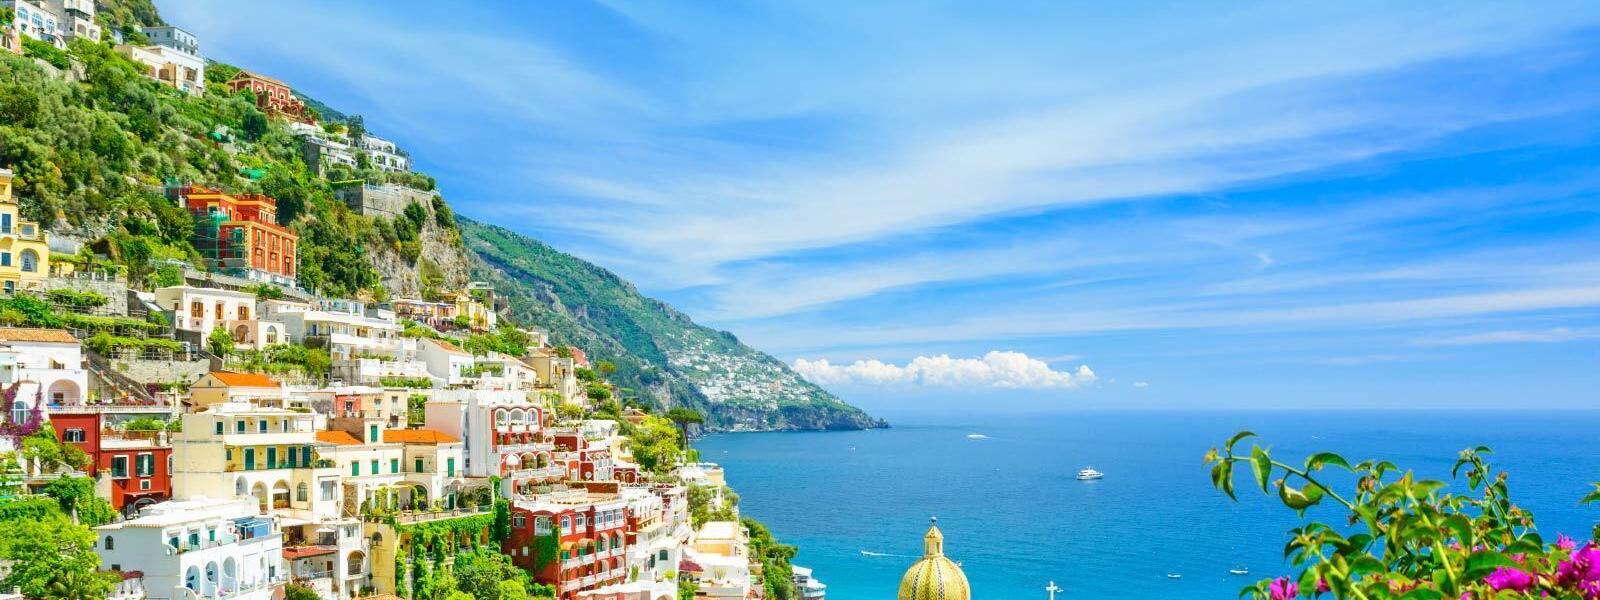 Luxus Ferienhäuser und Ferienwohnungen in Salerno - BELLEVUE Ferienhaus